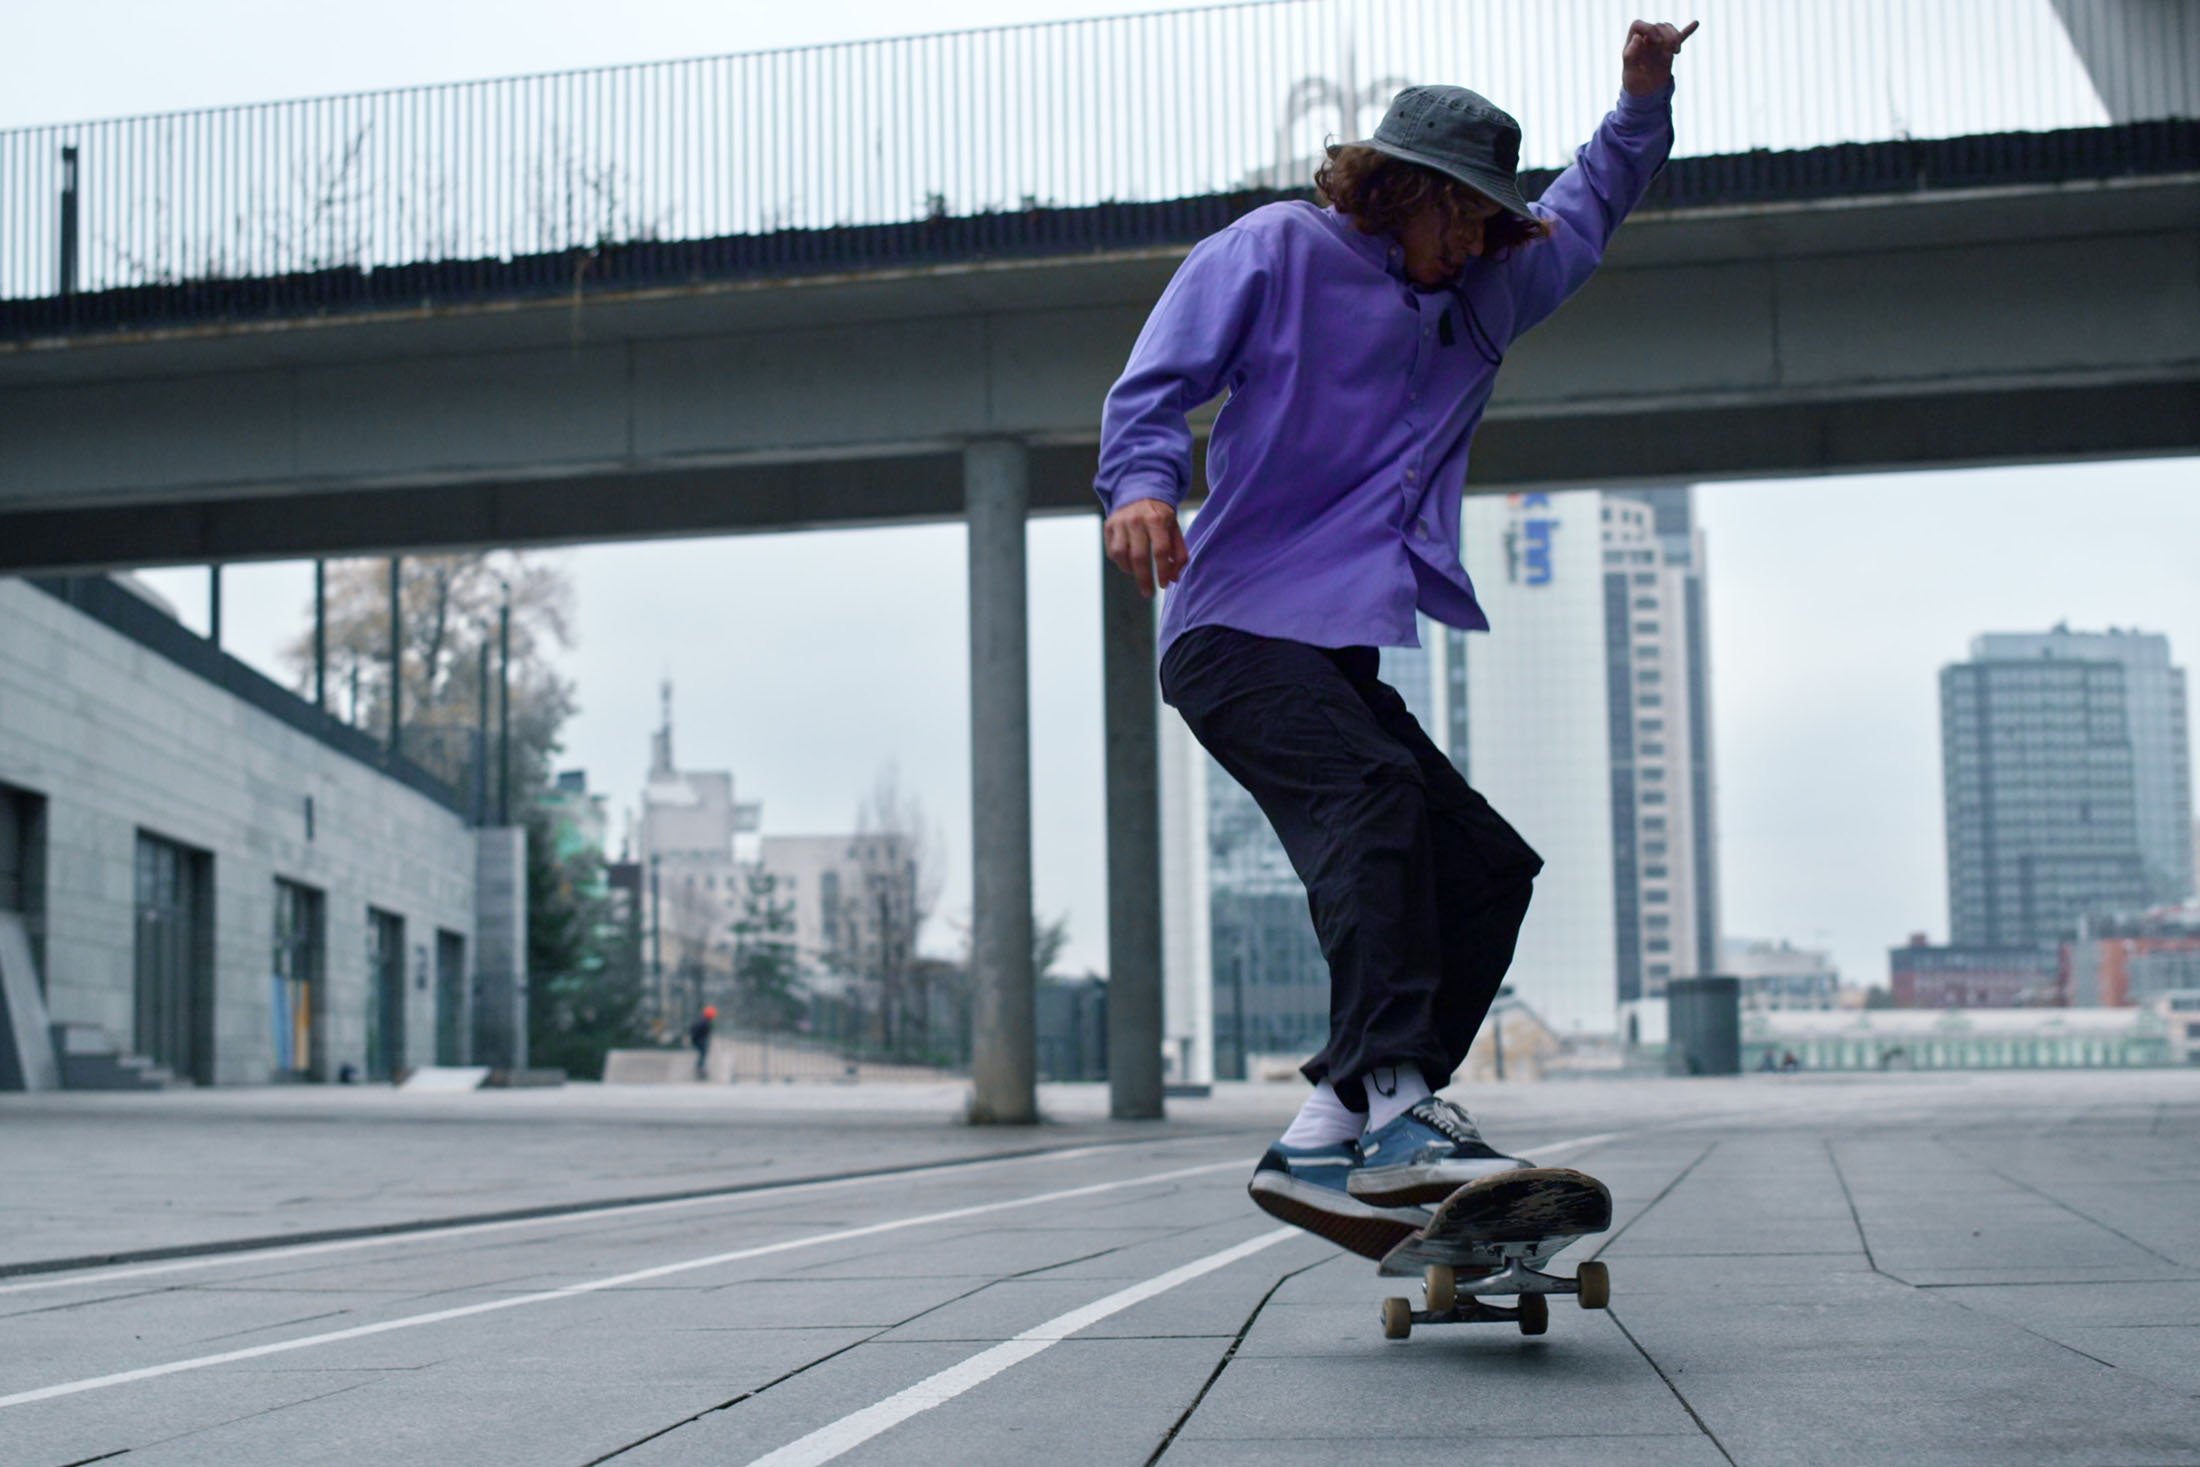 Olahraga skateboard telah menjadi industri besar, ekonomi dan budaya di seluruh dunia.  (Foto Shutterstock)